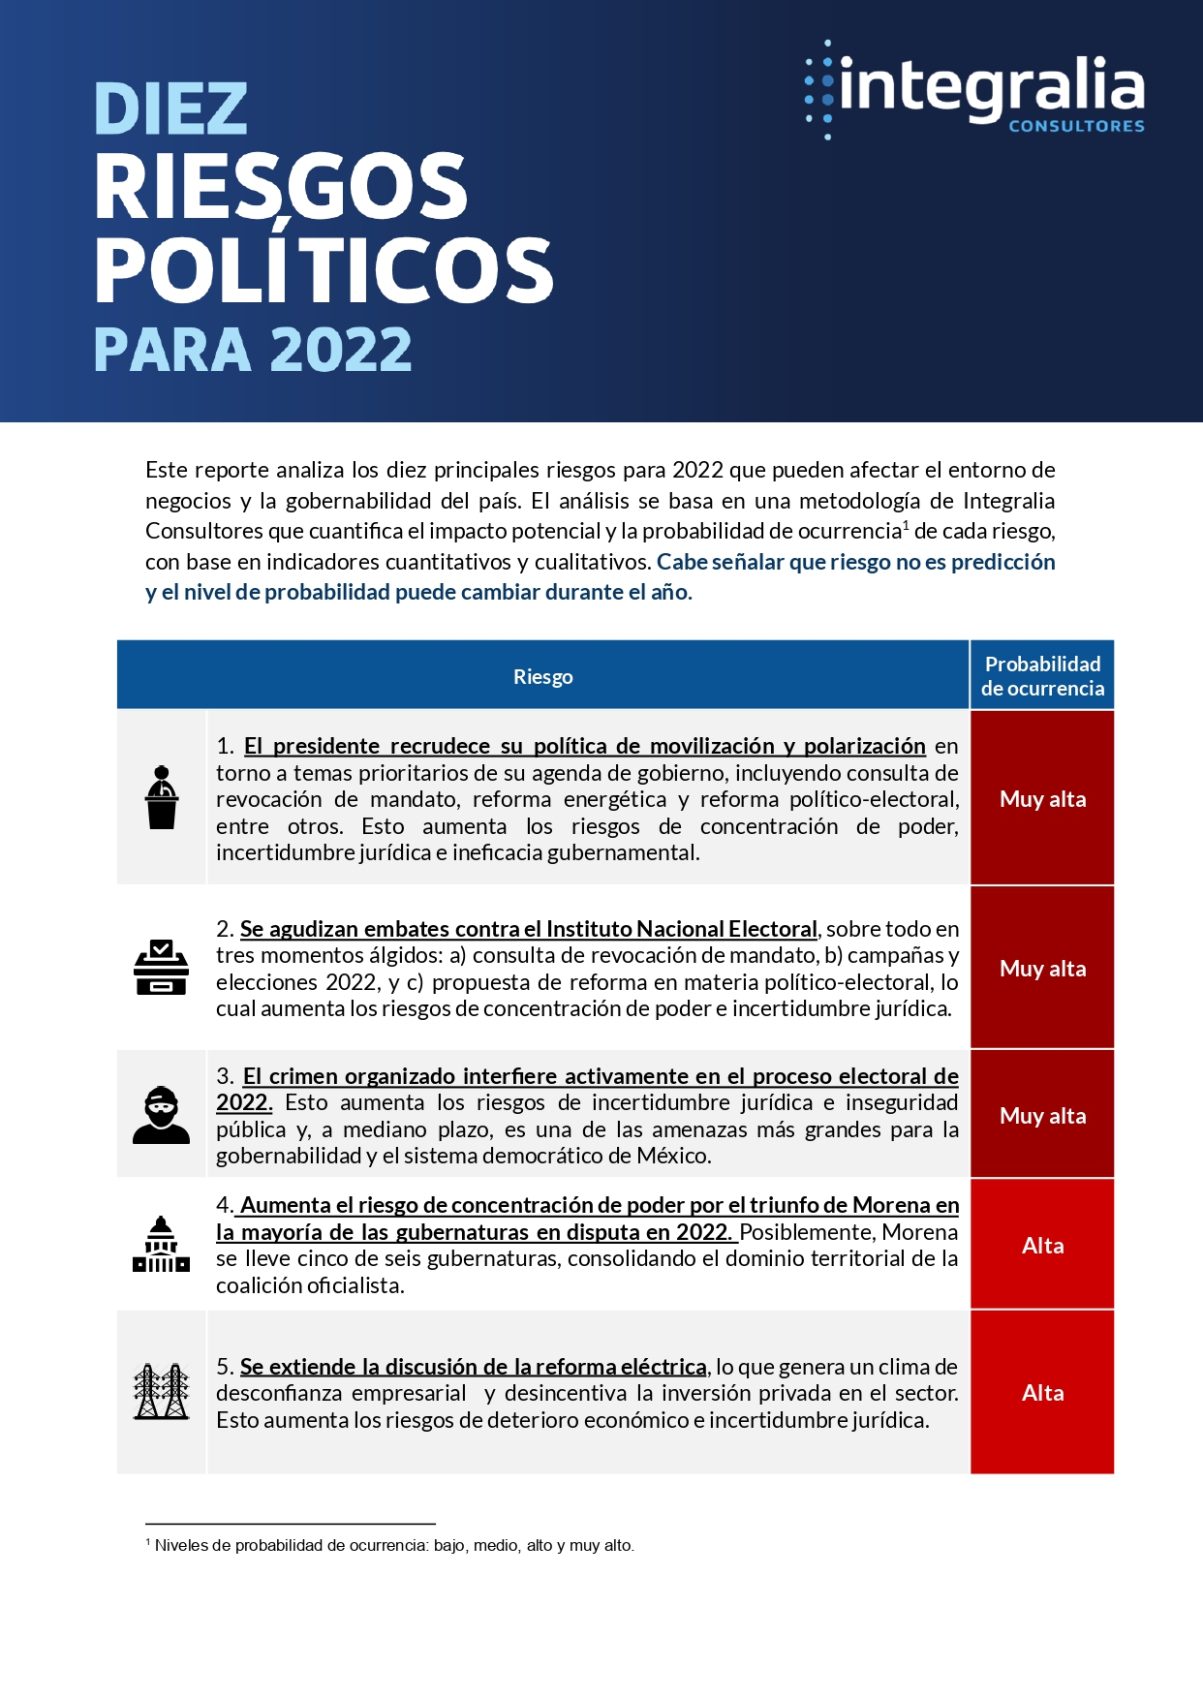 Los diez riesgos políticos para 2022 en México